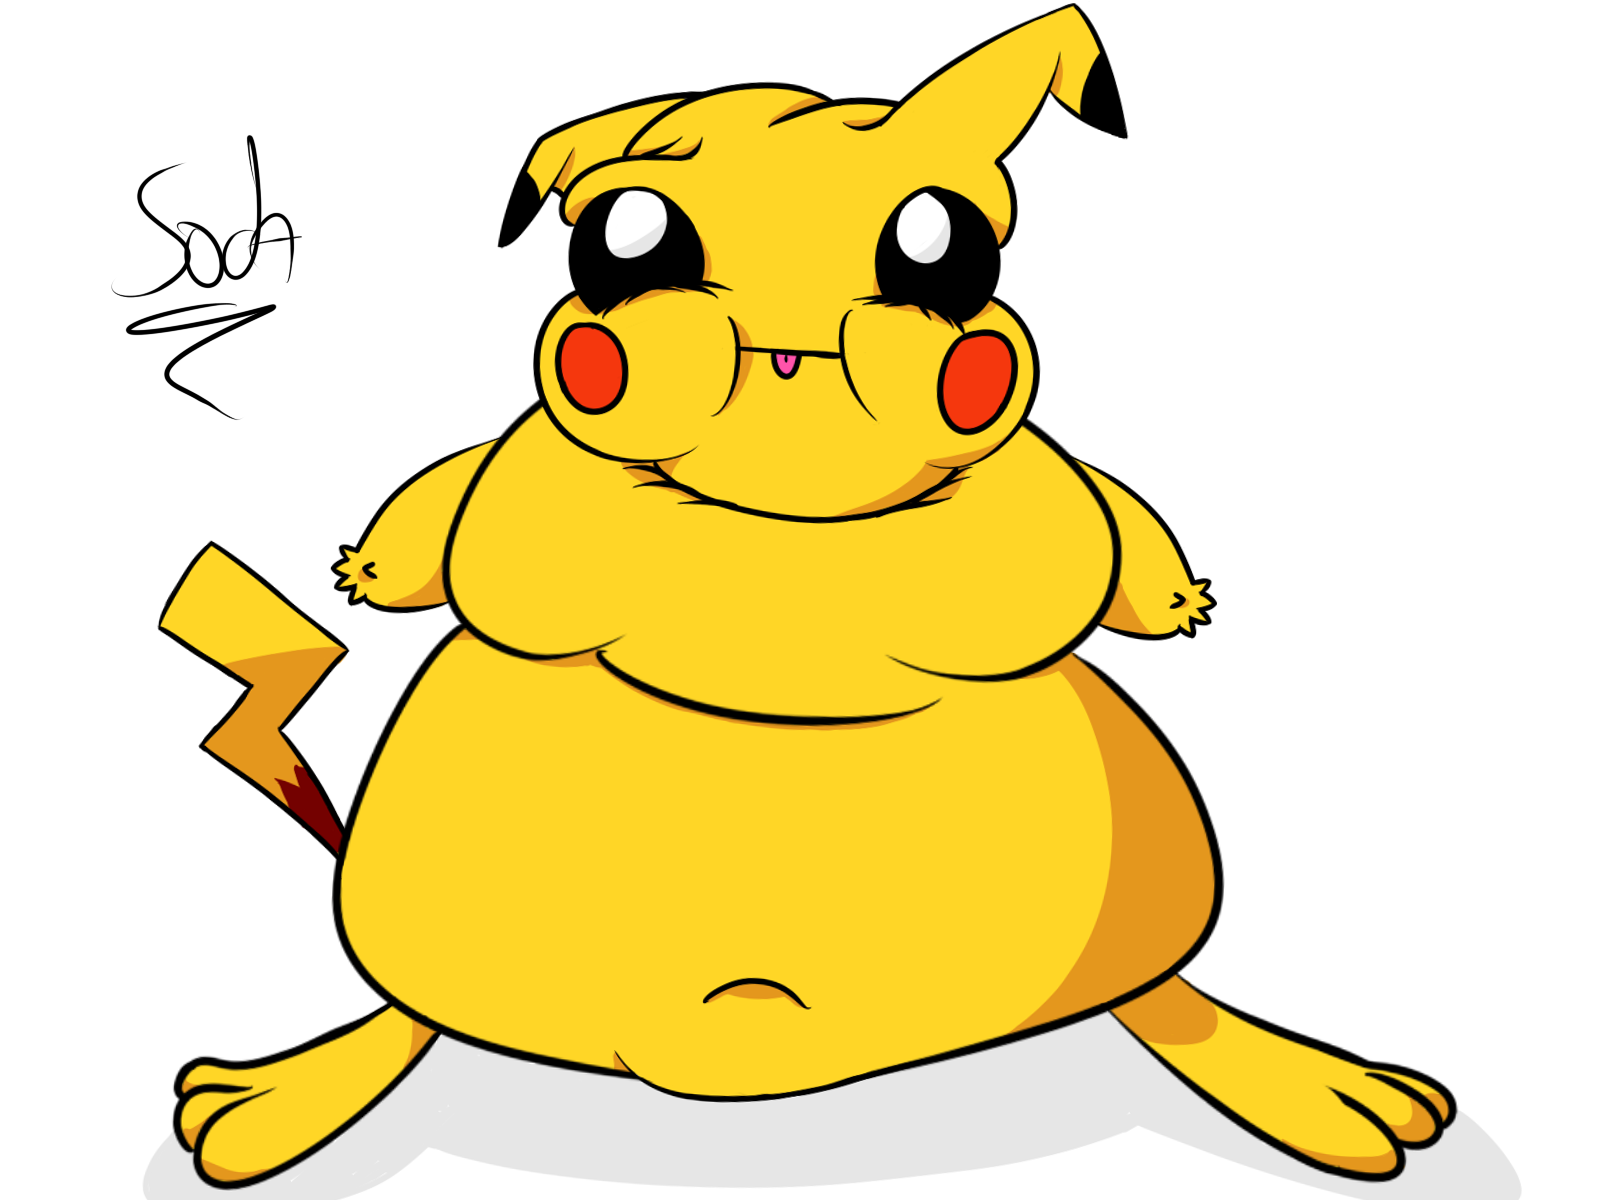 Fat Pikachu by SodaFueled on Newgrounds